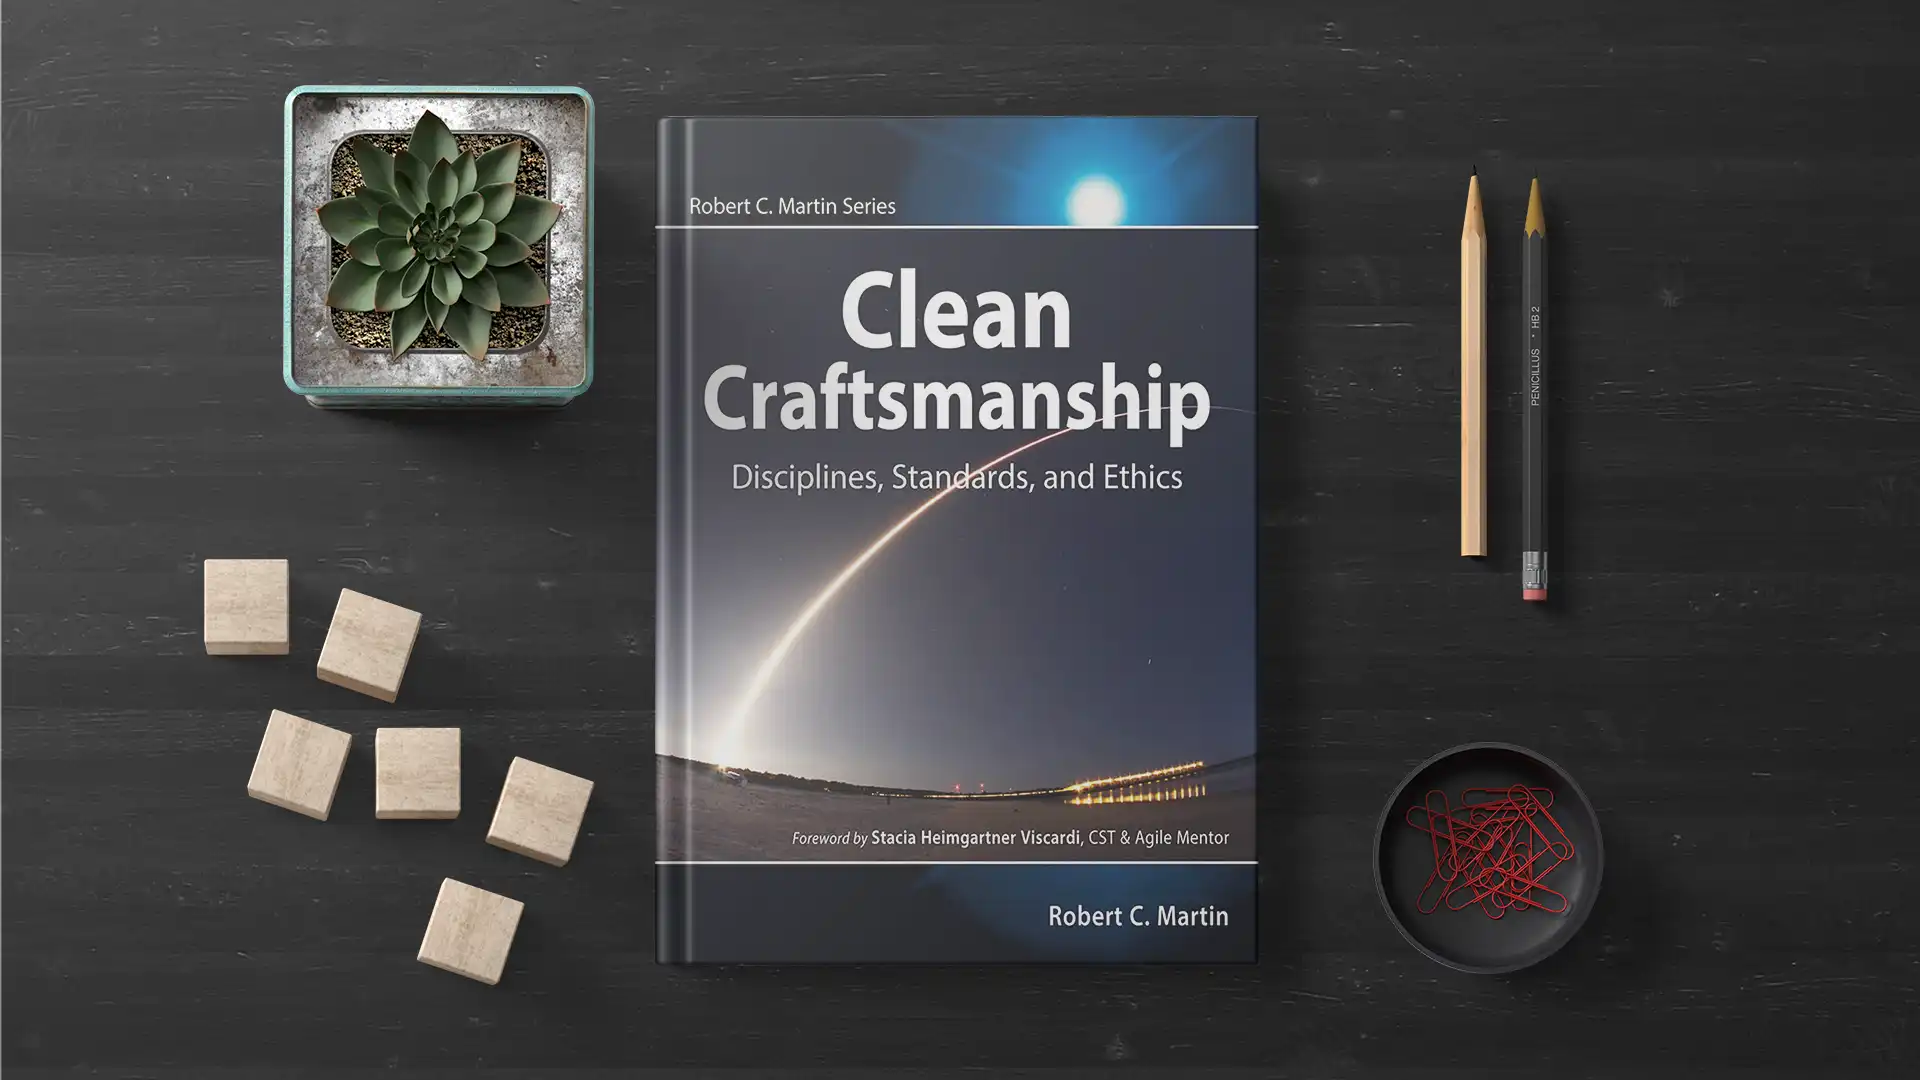 Clean Craftsmanship